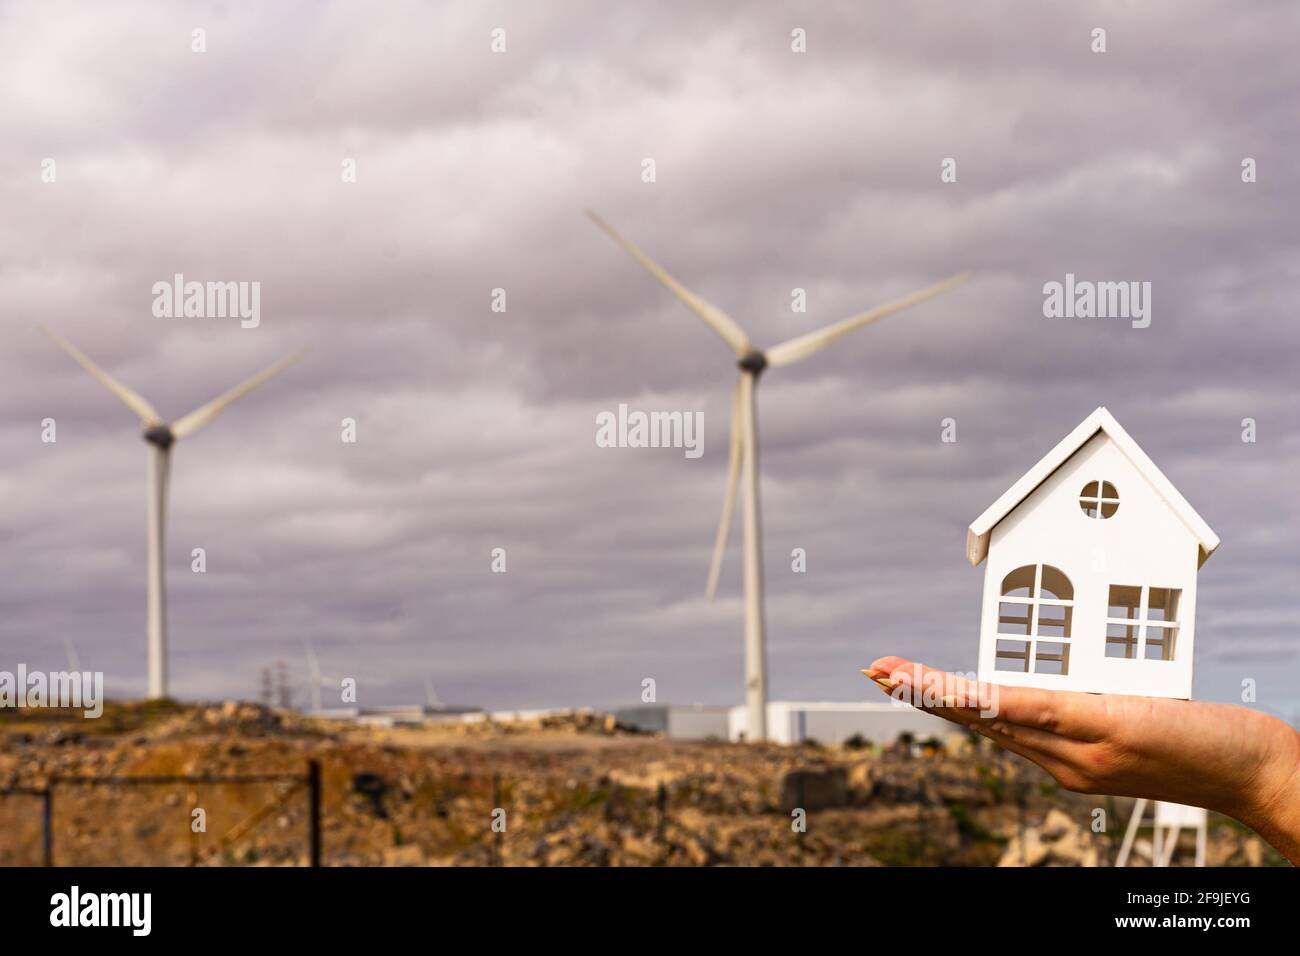 Mano de una mujer que sostiene un modelo de casa de madera blanca cerca de los aerogeneradores. Concepto de energía verde, sostenible y renovable. Foto de stock